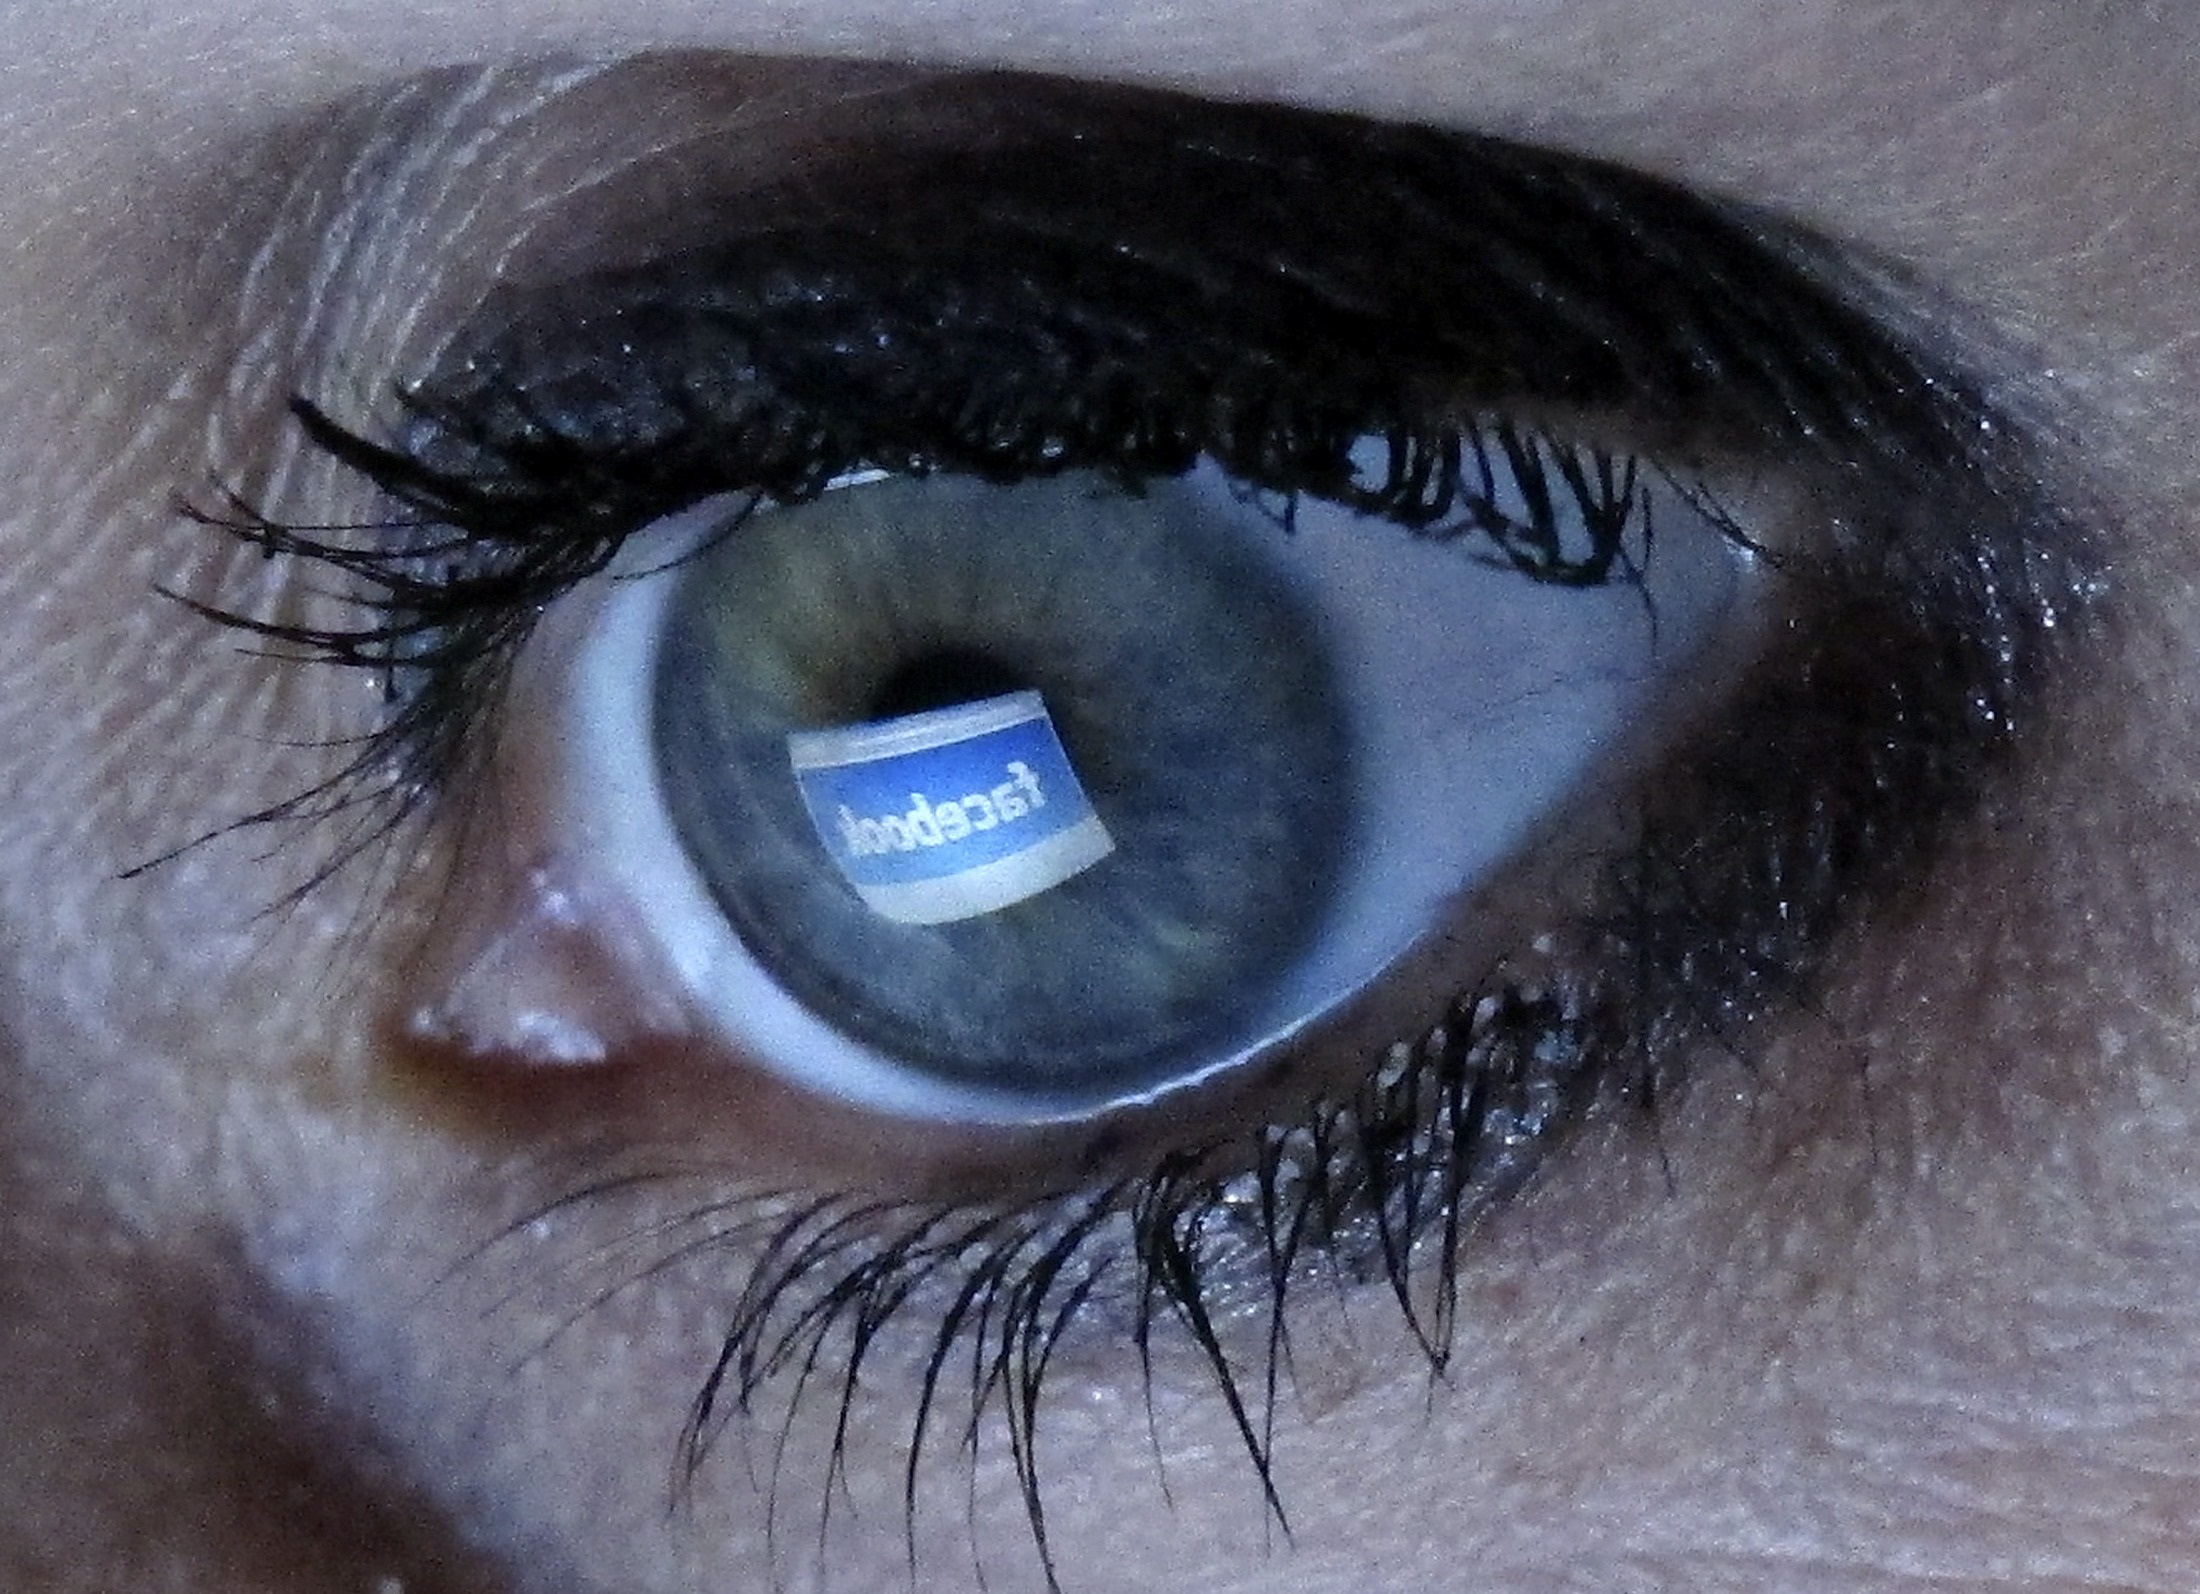 Deutsche Welle – Πόσο επικίνδυνο είναι το Facebook;